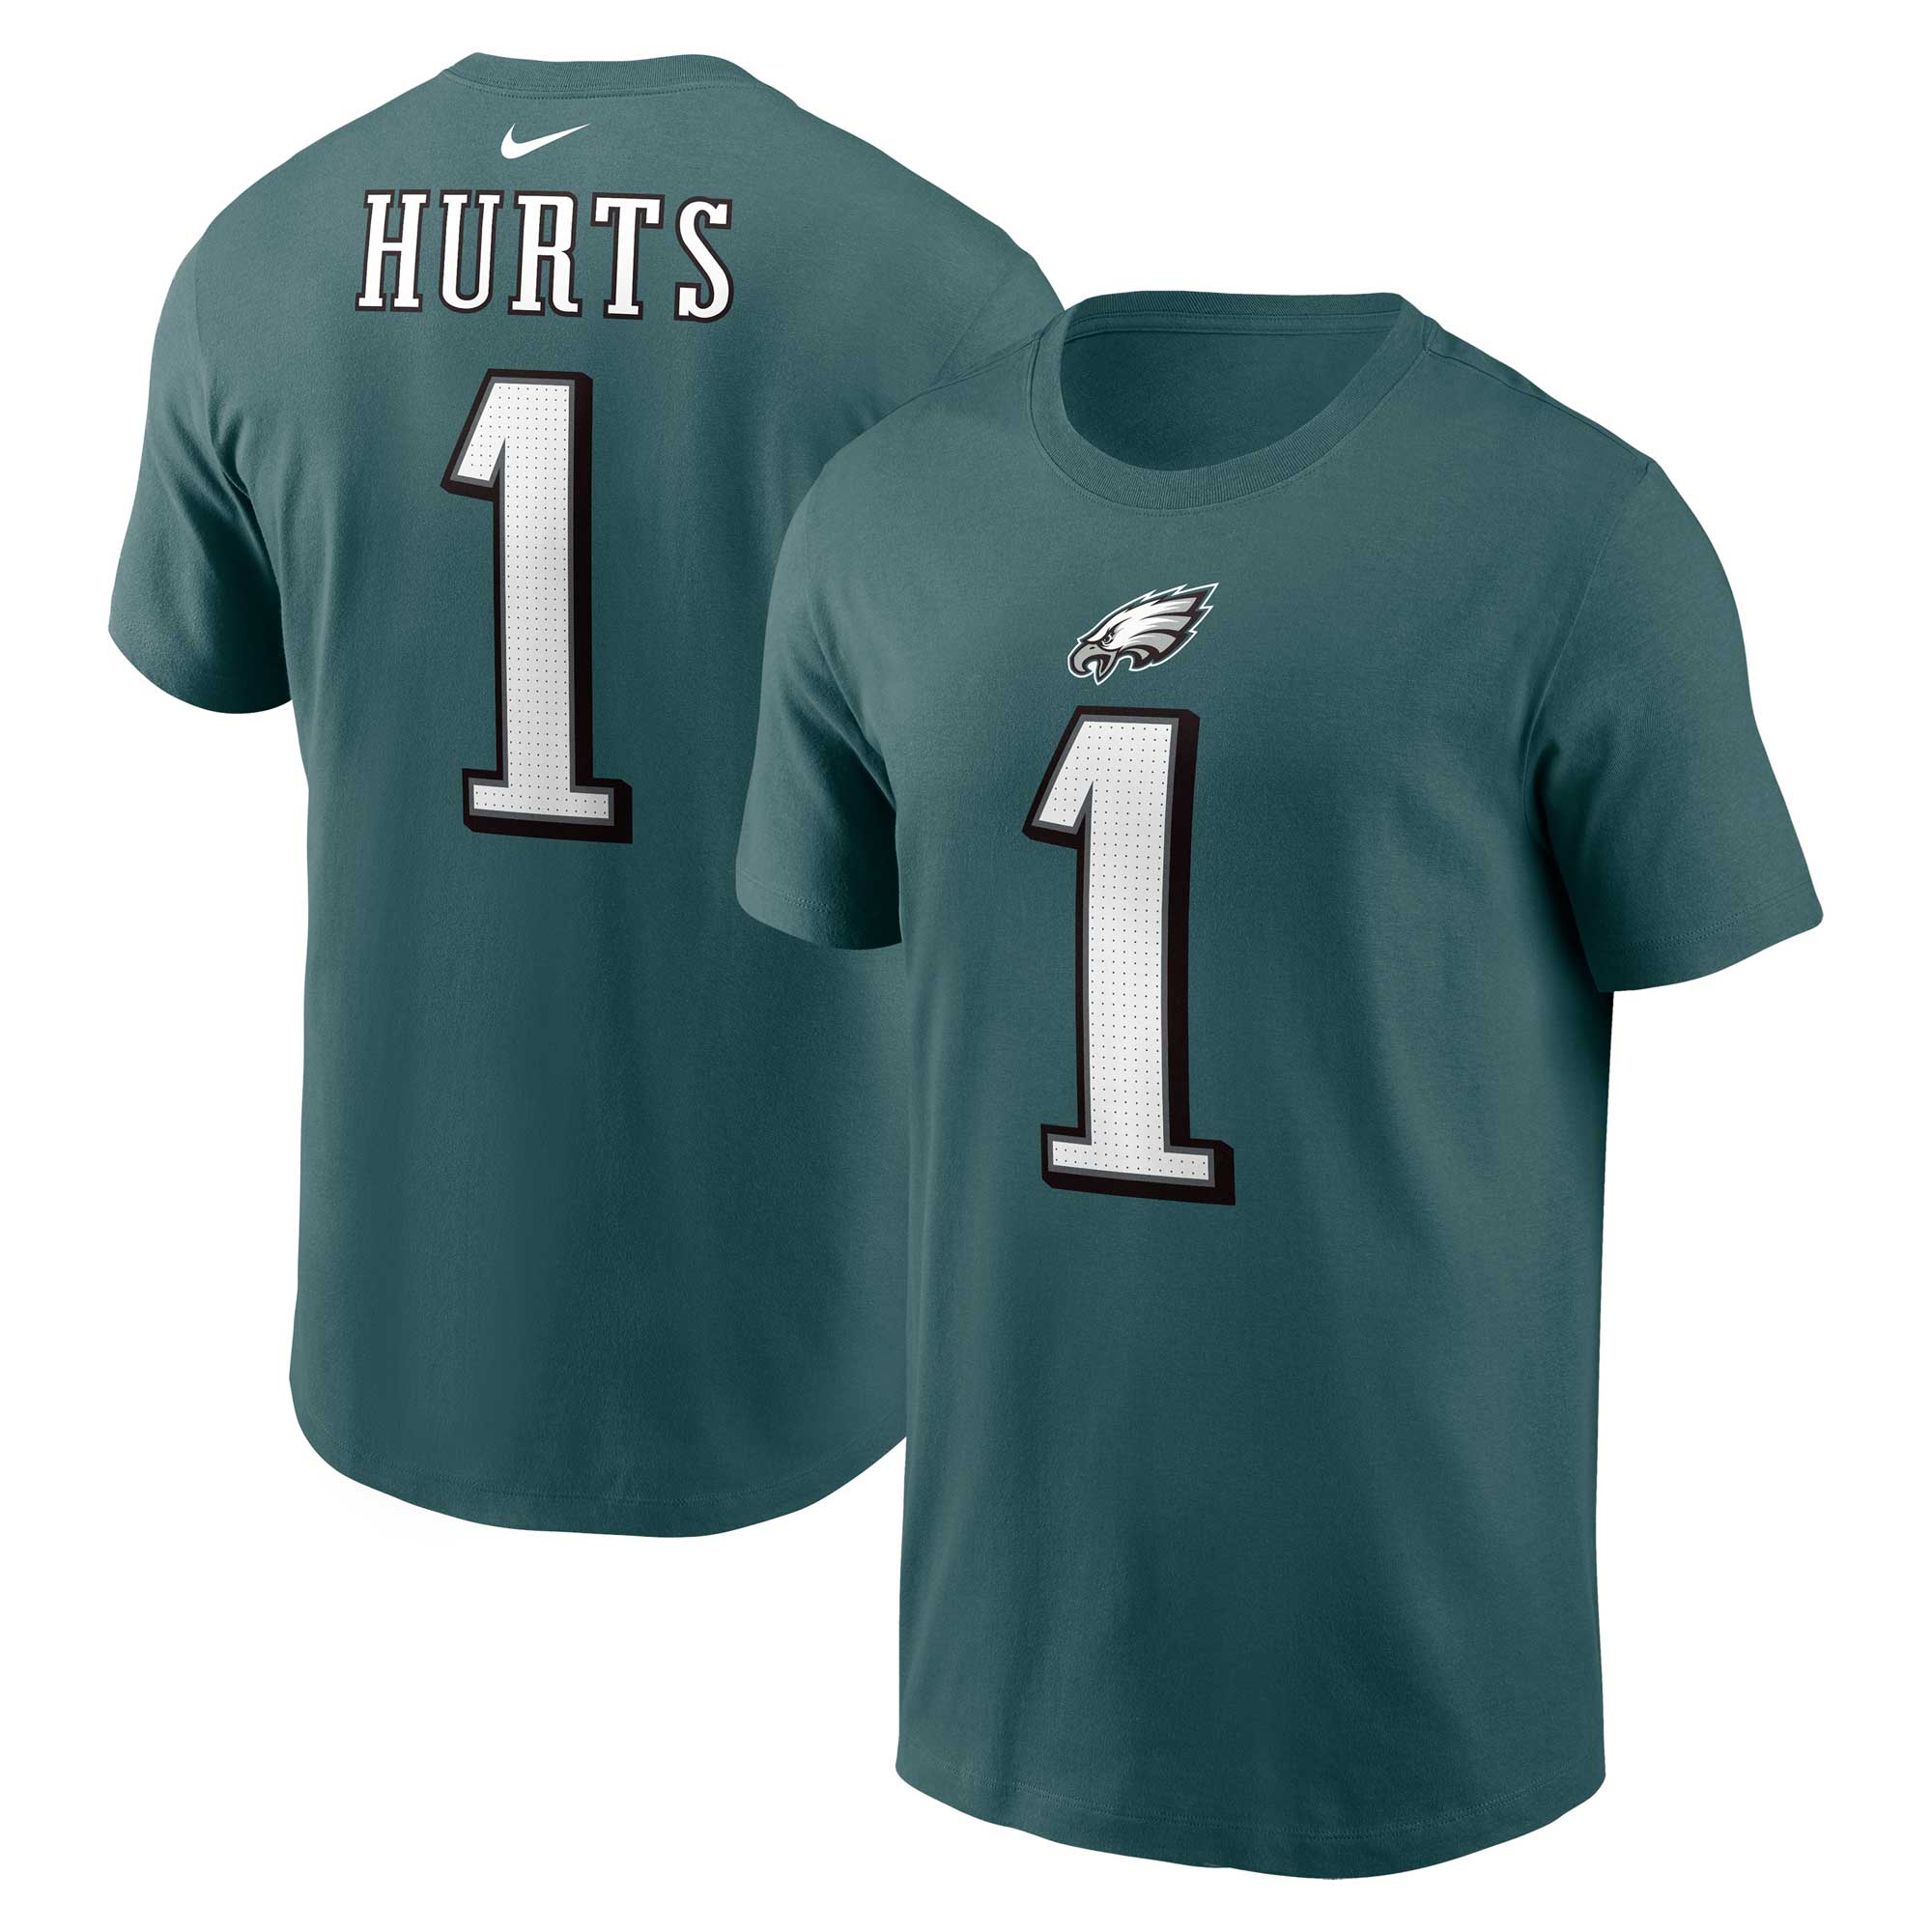 Jalen verletzt Philadelphia Eagles Nike-T-Shirt mit Spielernamen und -nummer – Dunkelgrün